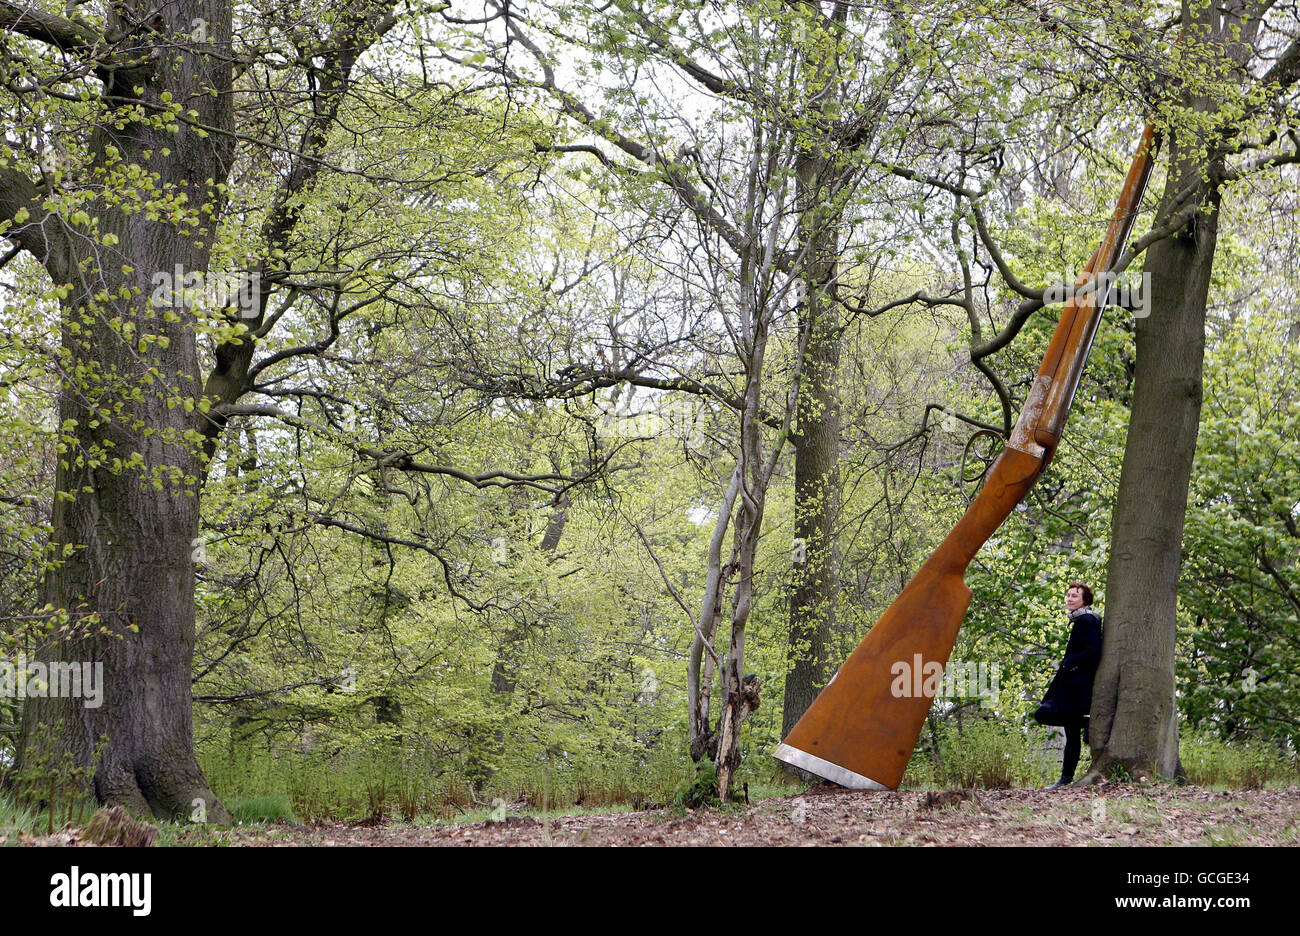 Die Künstlerin Cornelia Parker mit ihrer Arbeit "Landscape with Gun and Tree" eine 9 m hohe Stahlflinte, die an einer Buche angelehnt ist, eine der neuen Arbeiten, die heute offiziell auf Jupiter Artland in der Nähe von Edinburgh vorgestellt werden. Stockfoto